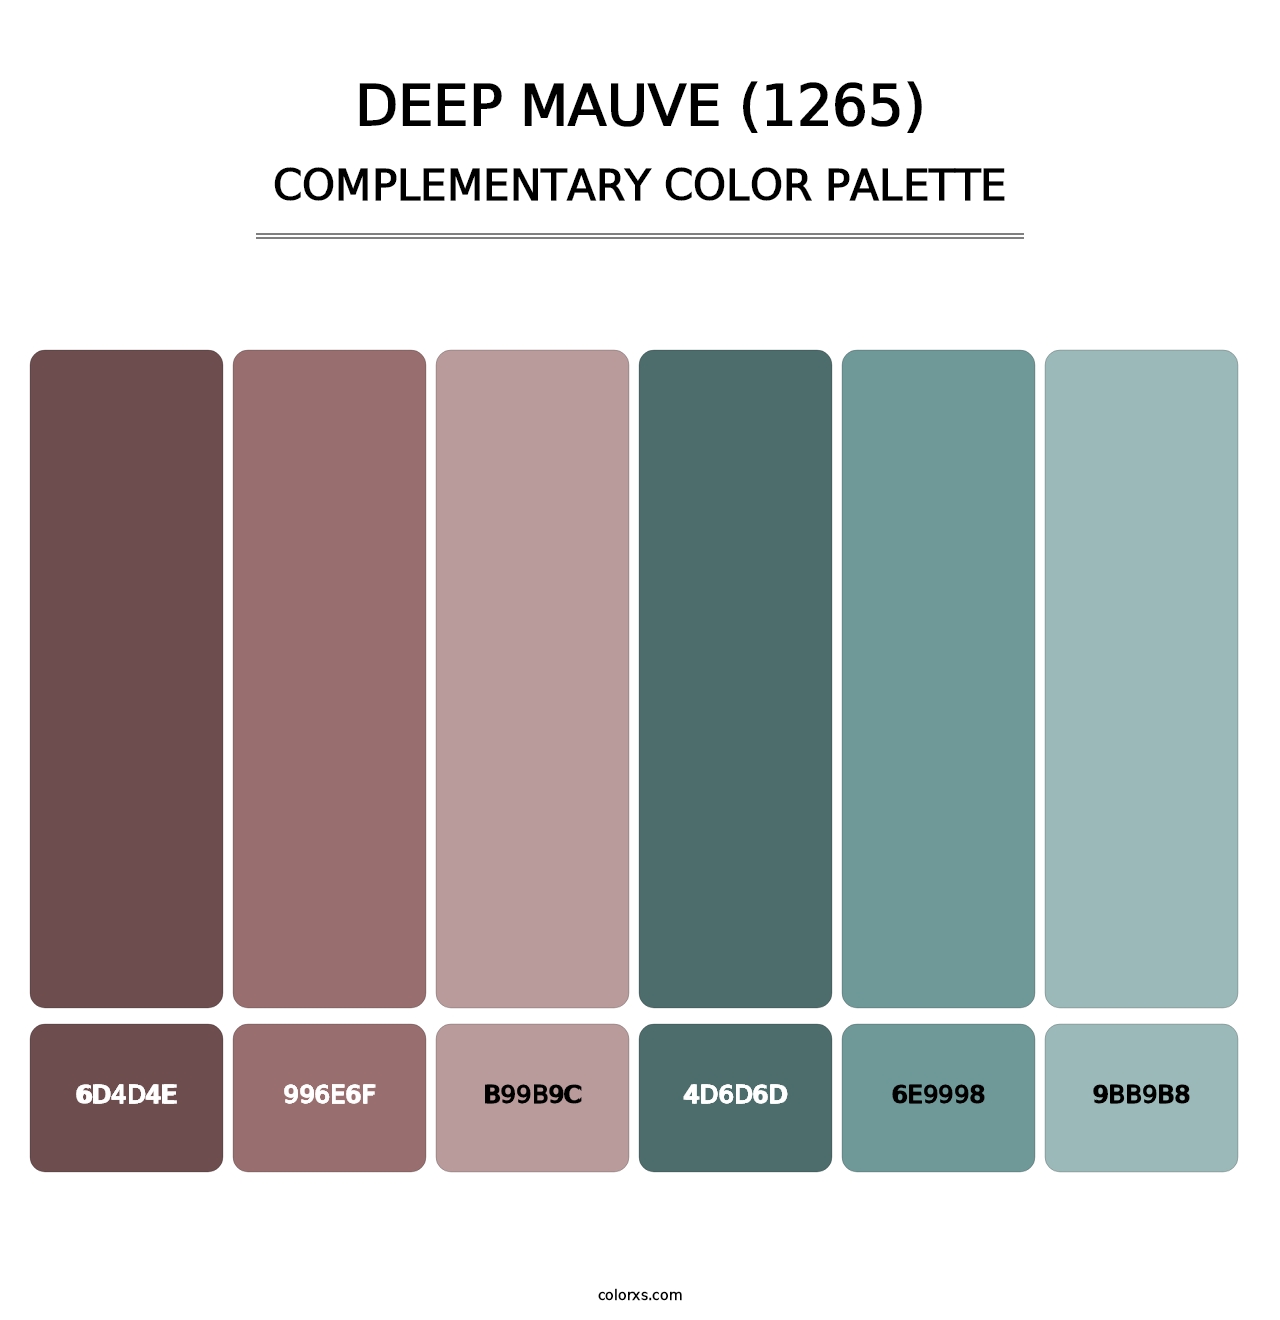 Deep Mauve (1265) - Complementary Color Palette